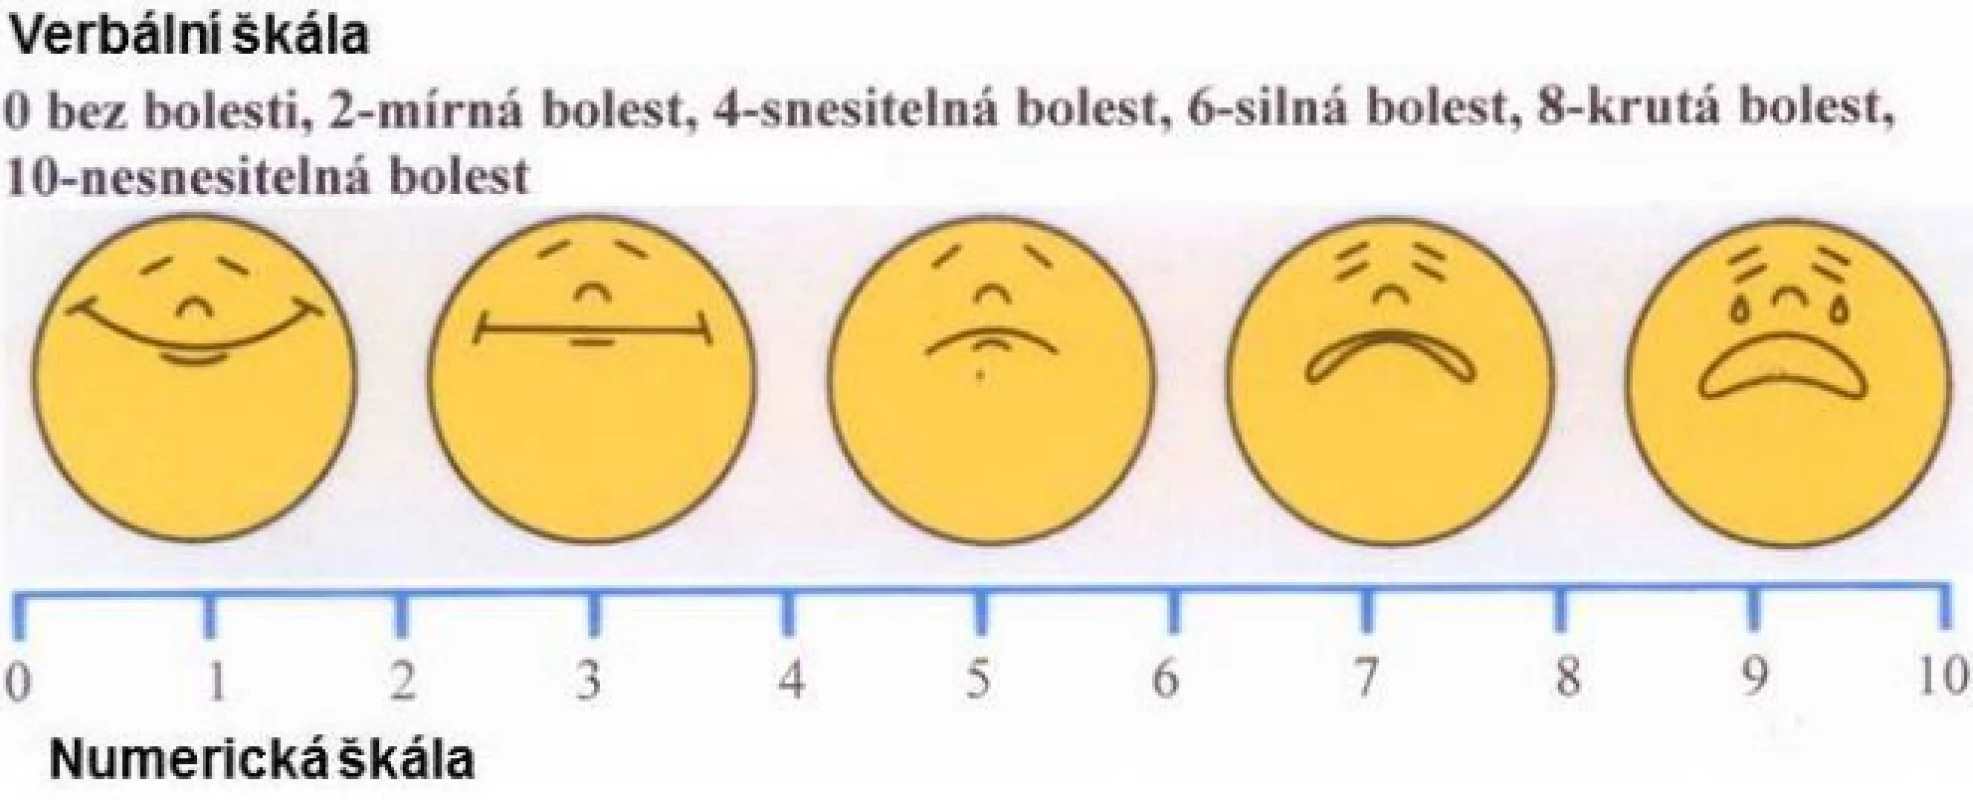 Kombinace různých škál pro měření intenzity bolesti: verbální, obličejová, numerická